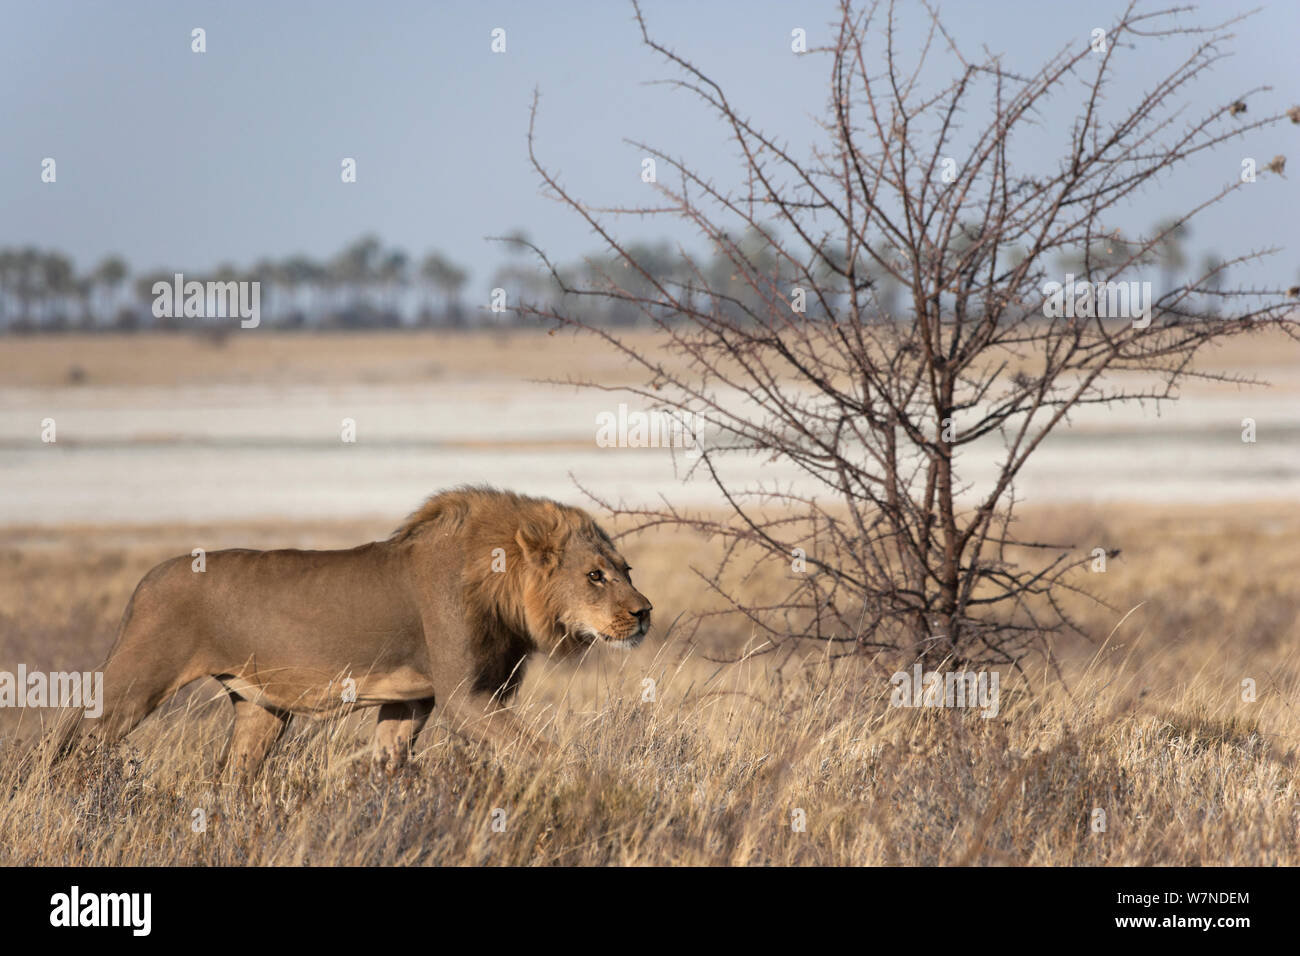 Lion (Panthera leo) stalking prey, Makgadikgadi Pans, Kalahari desert, Botswana. Stock Photo